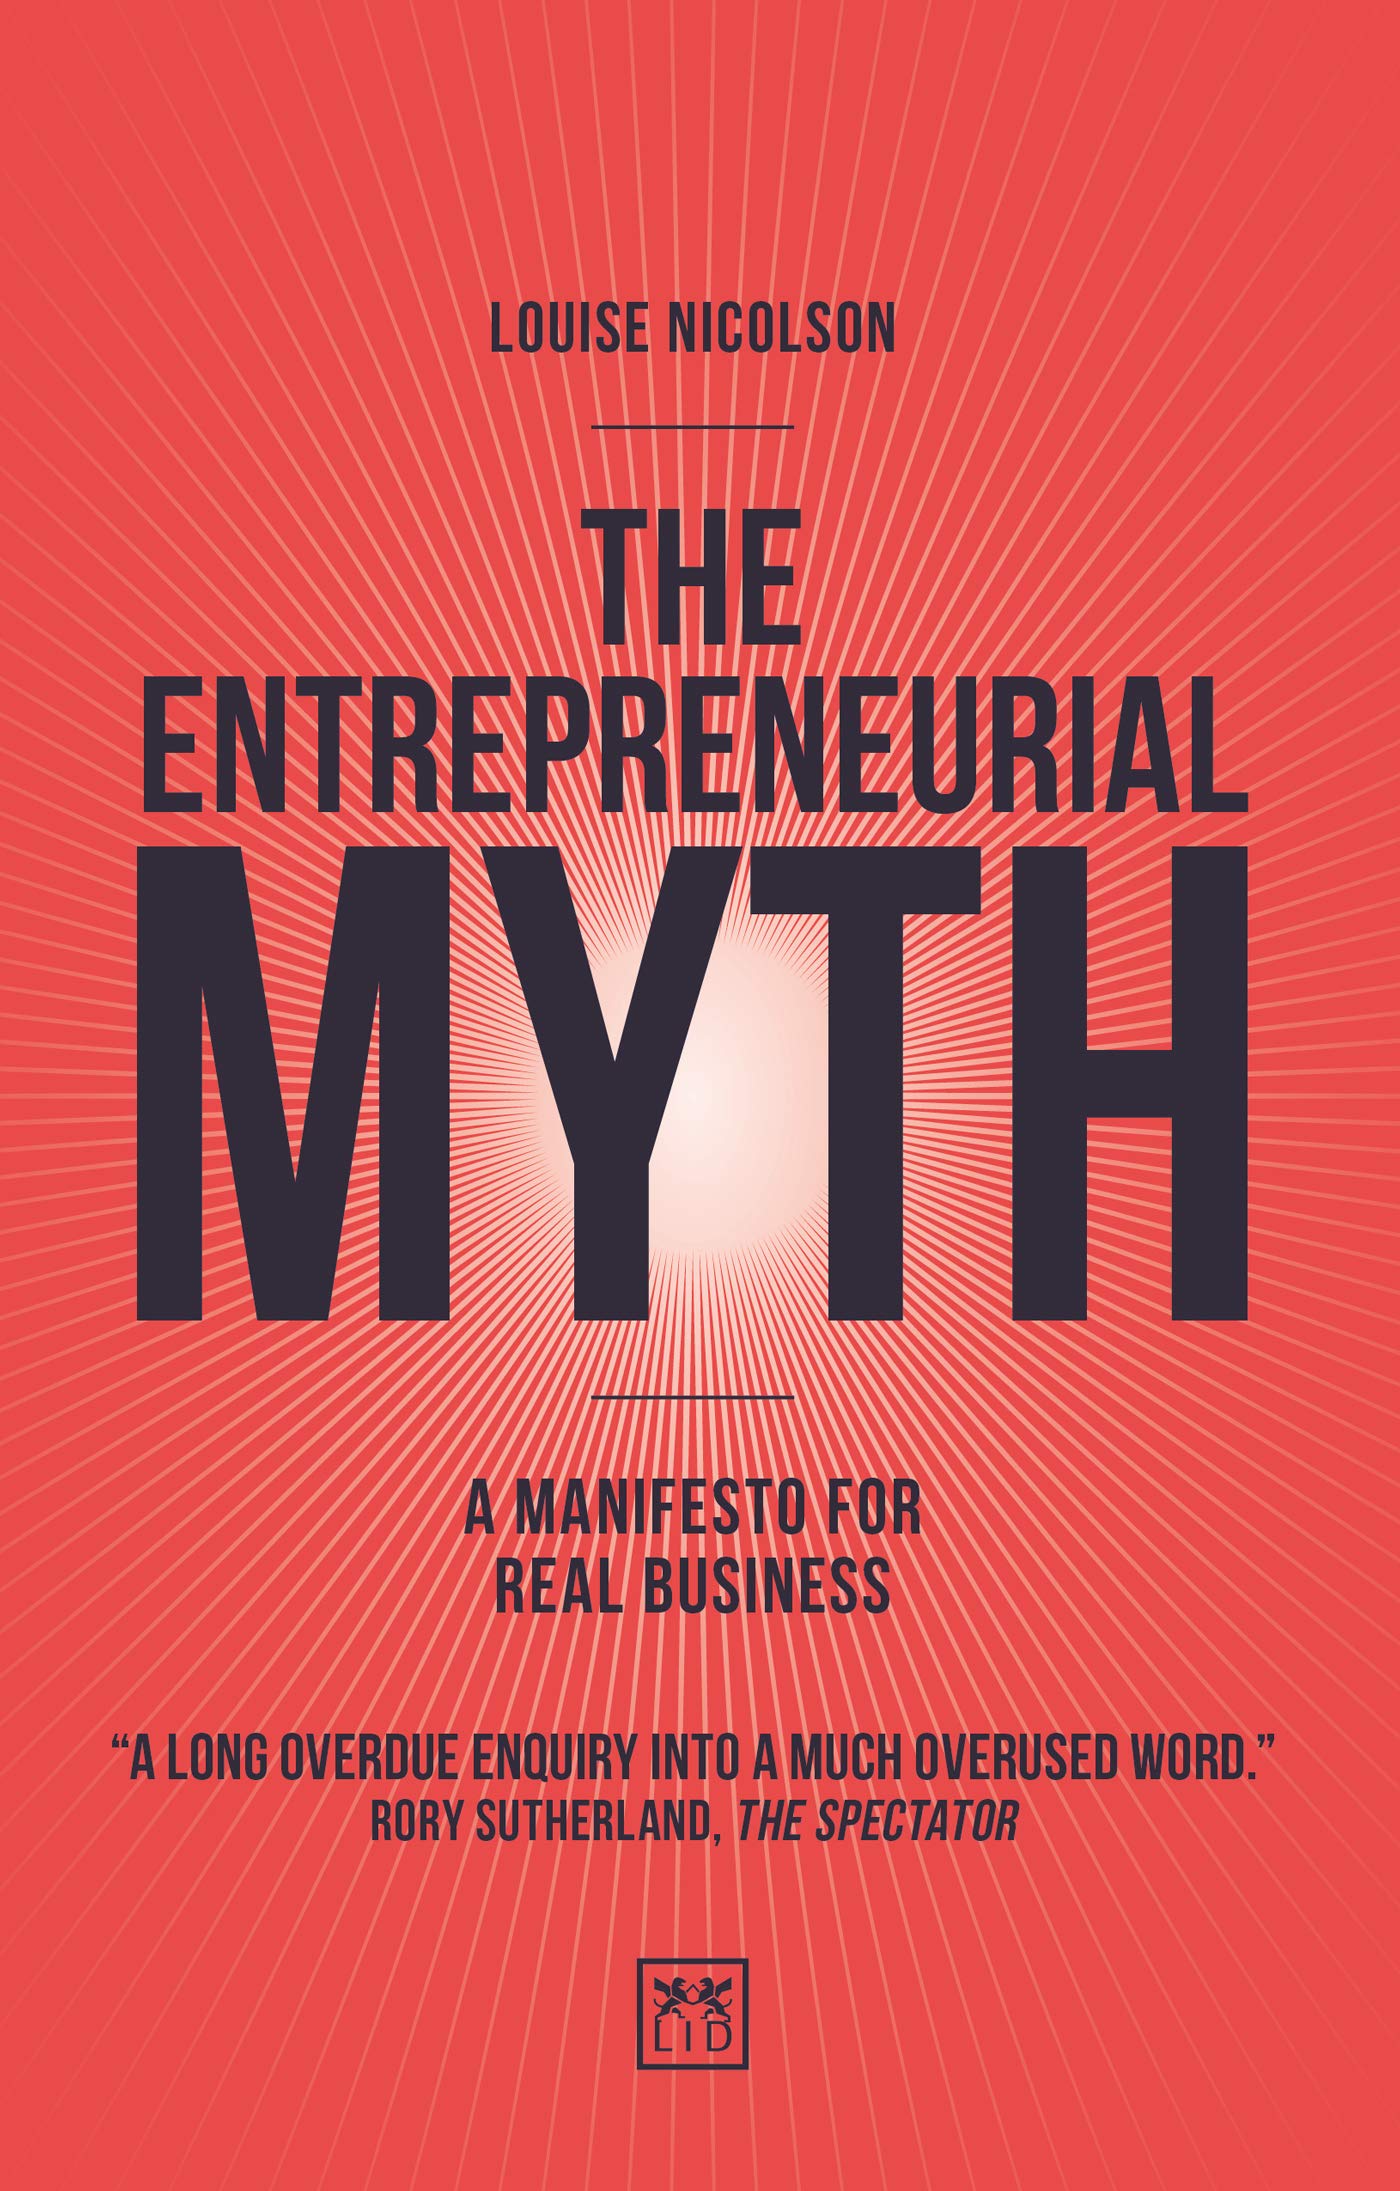 The Entrepreneurial Myth